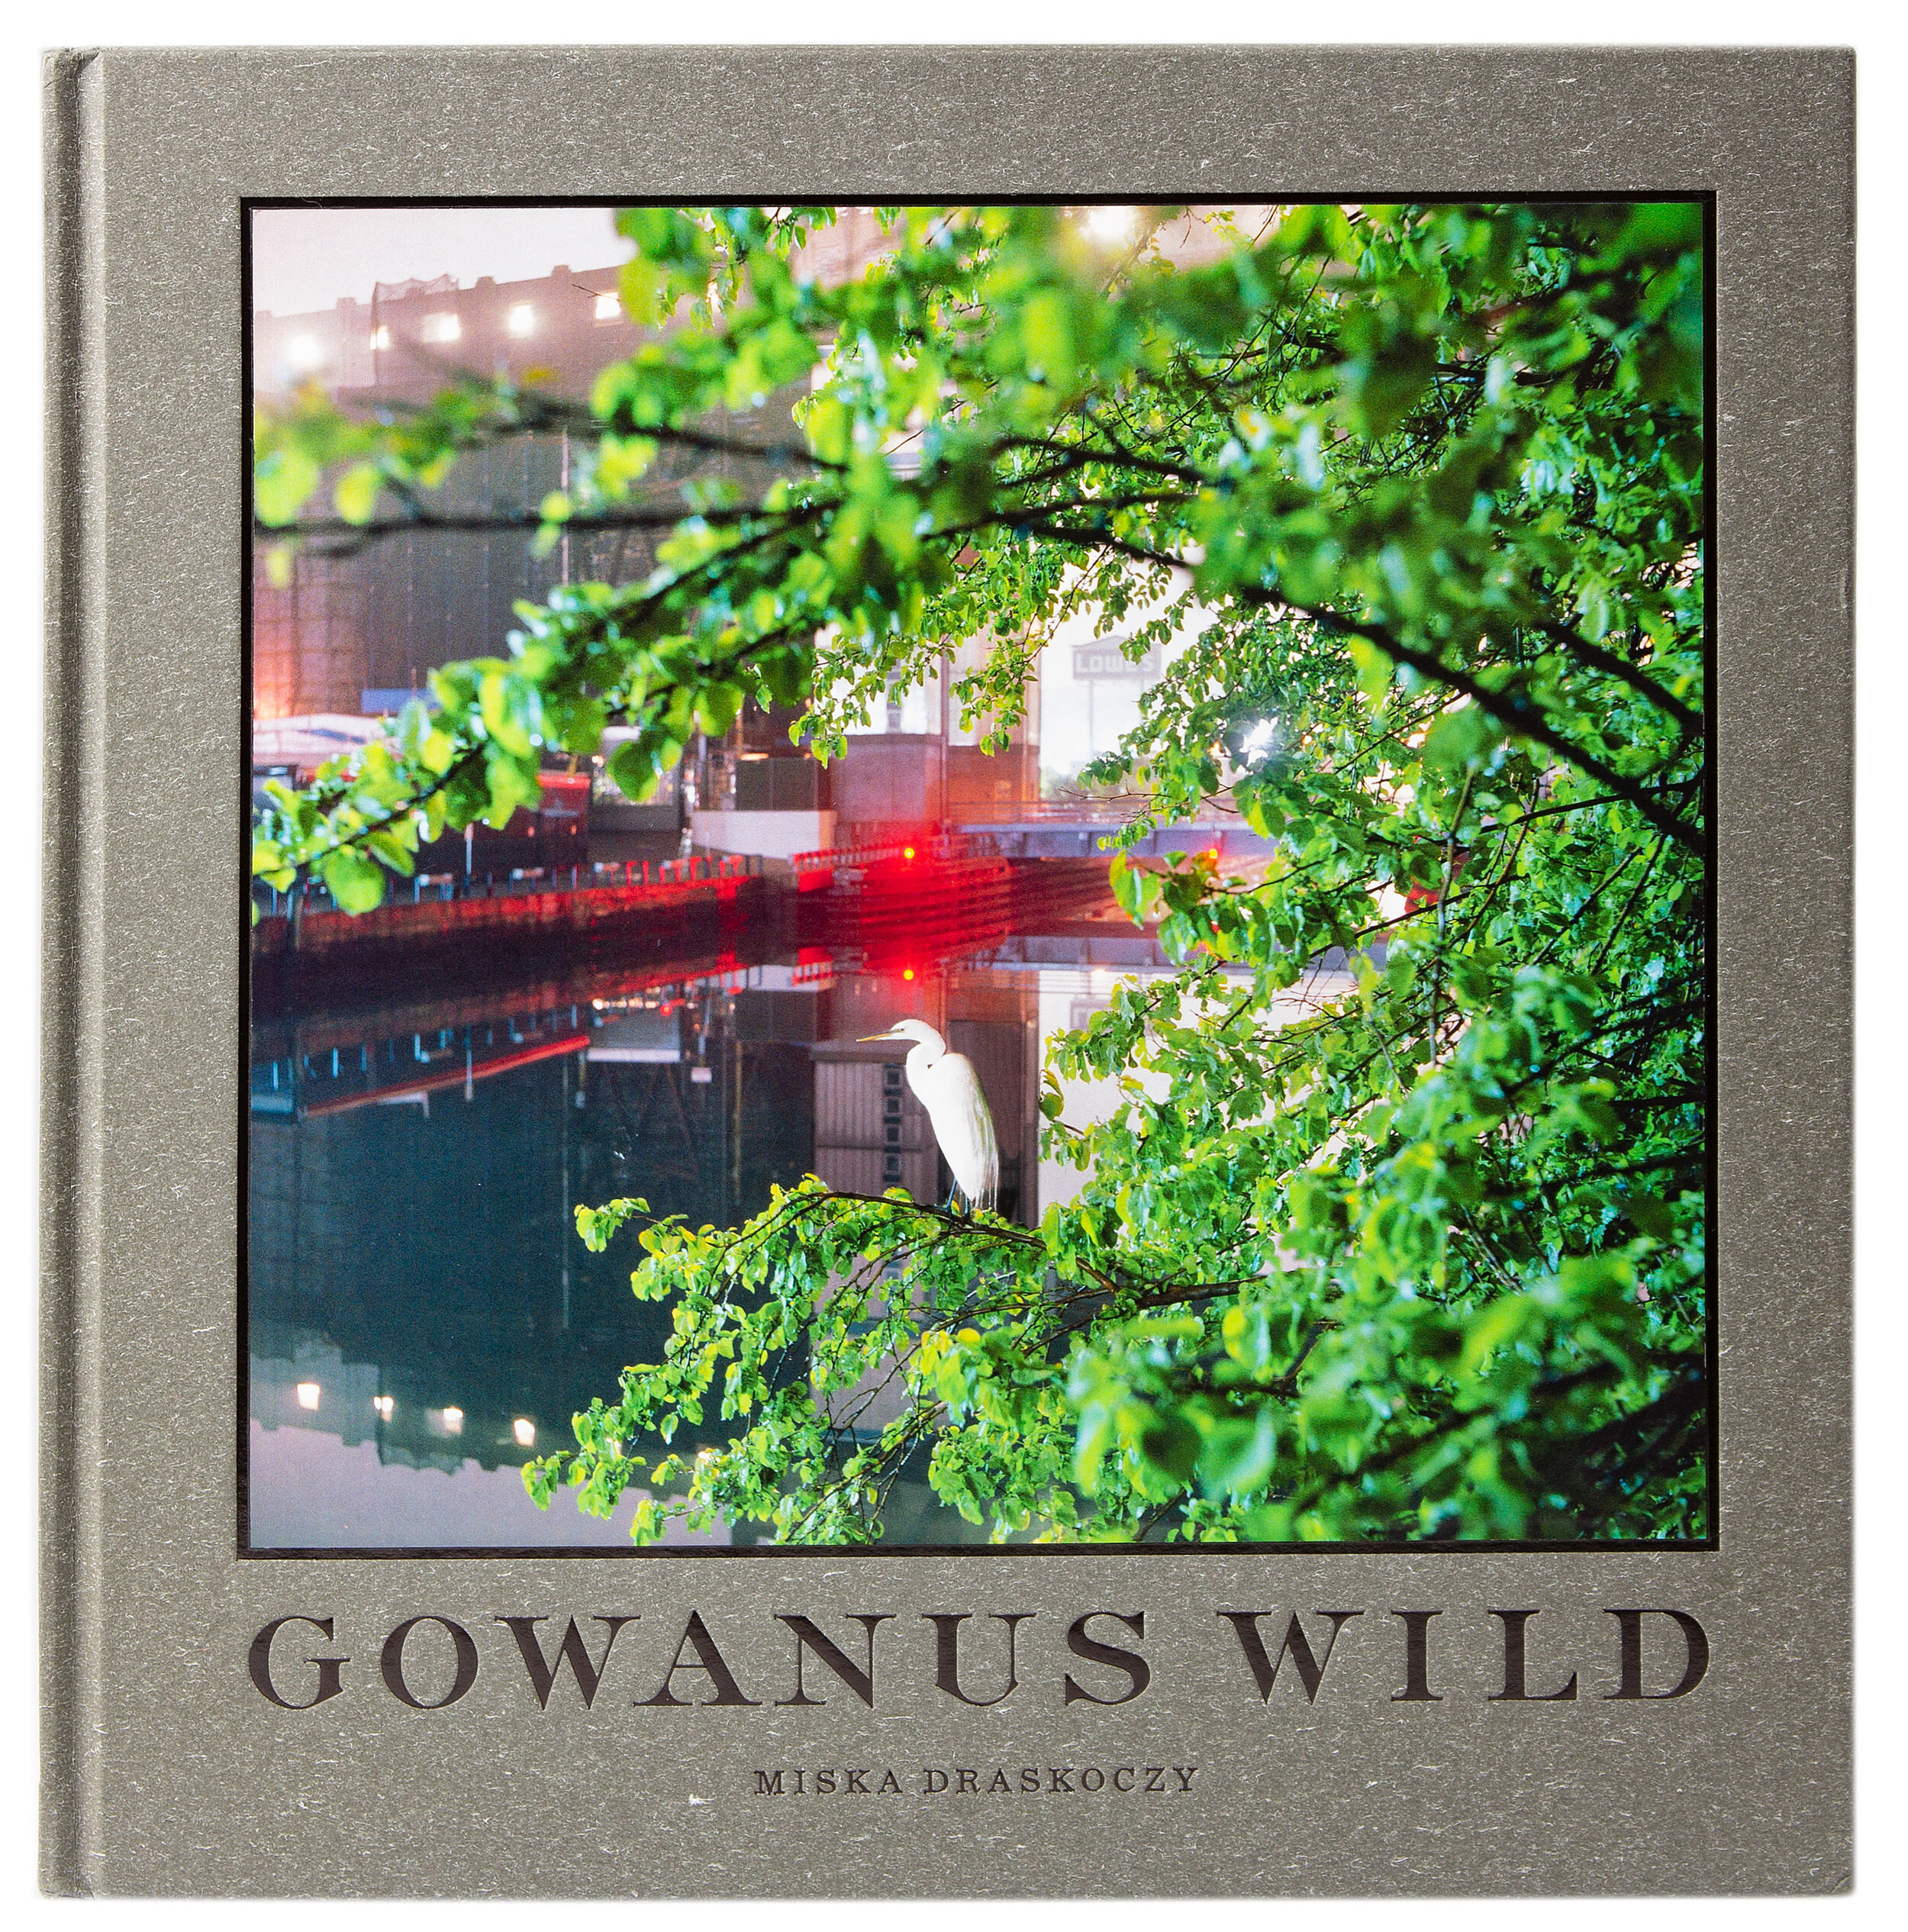 GOWANUS WILD